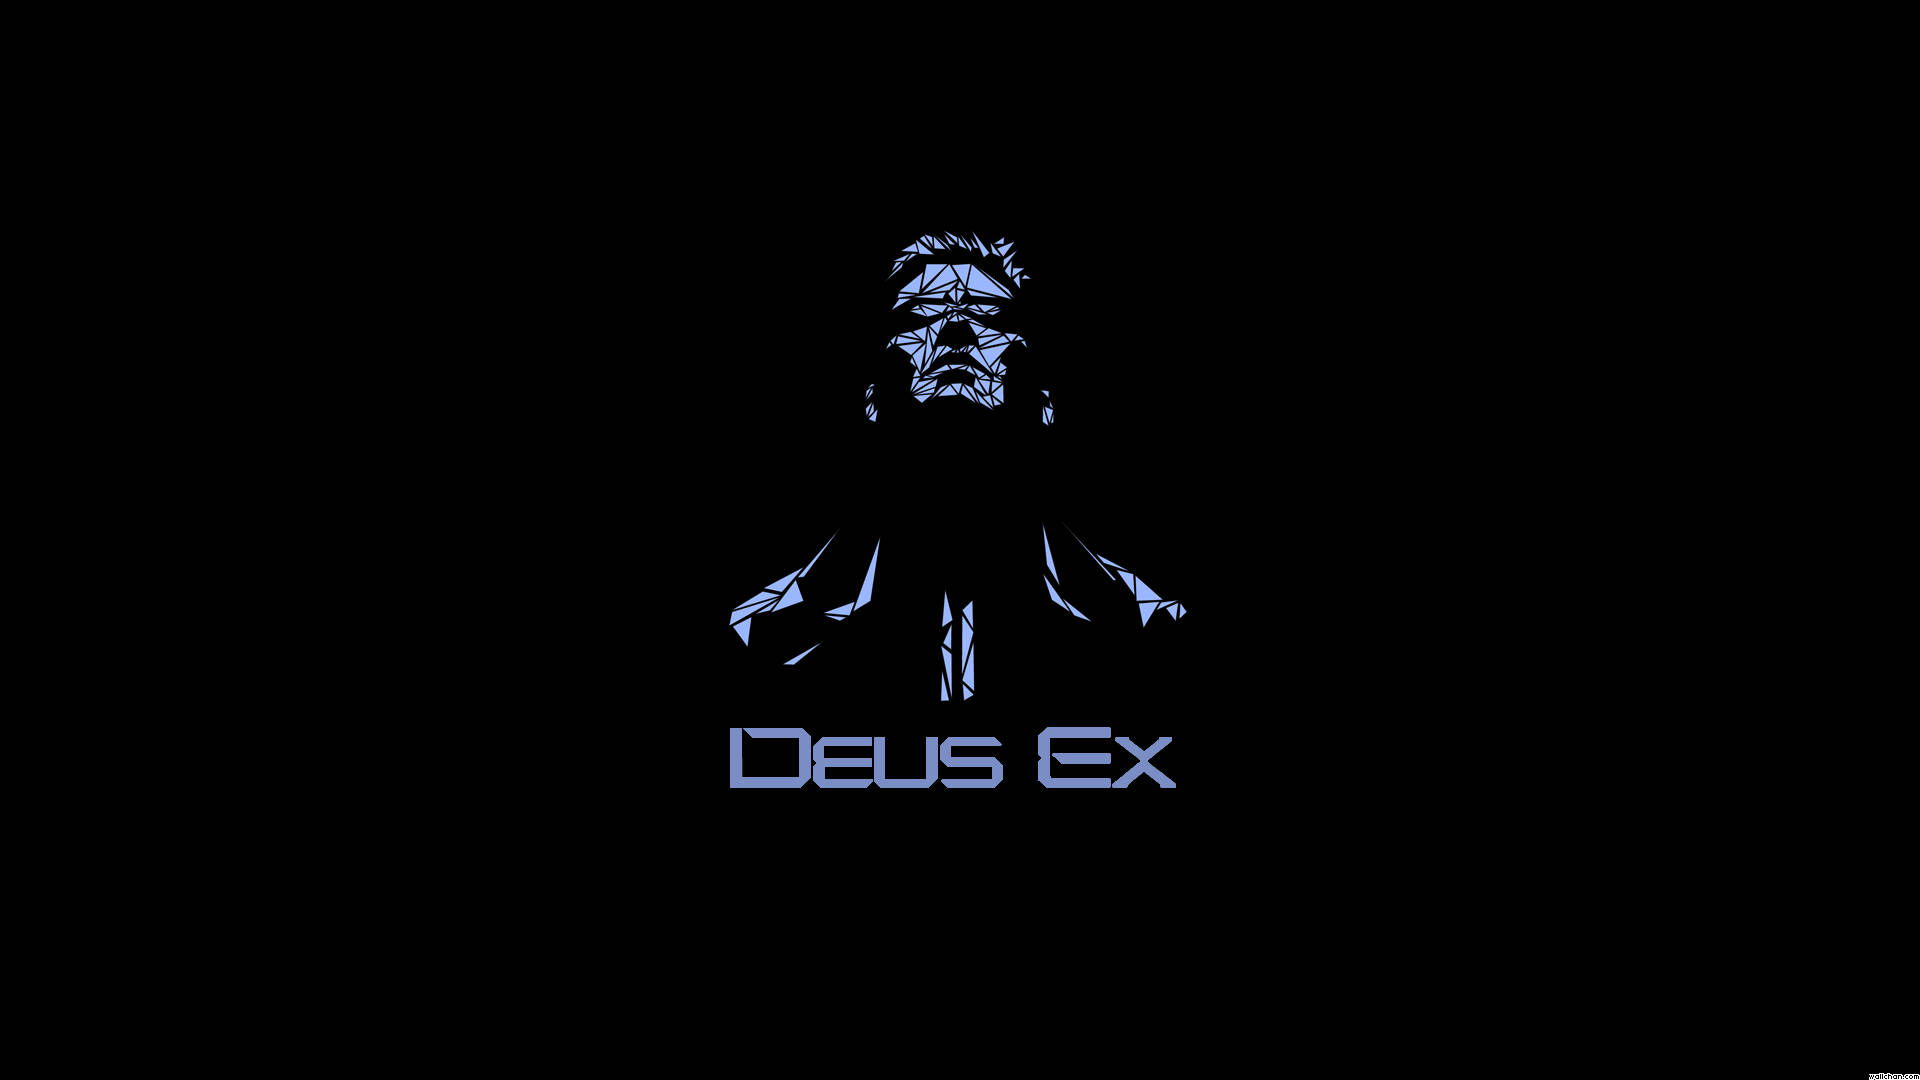 Fondos De Deus Ex